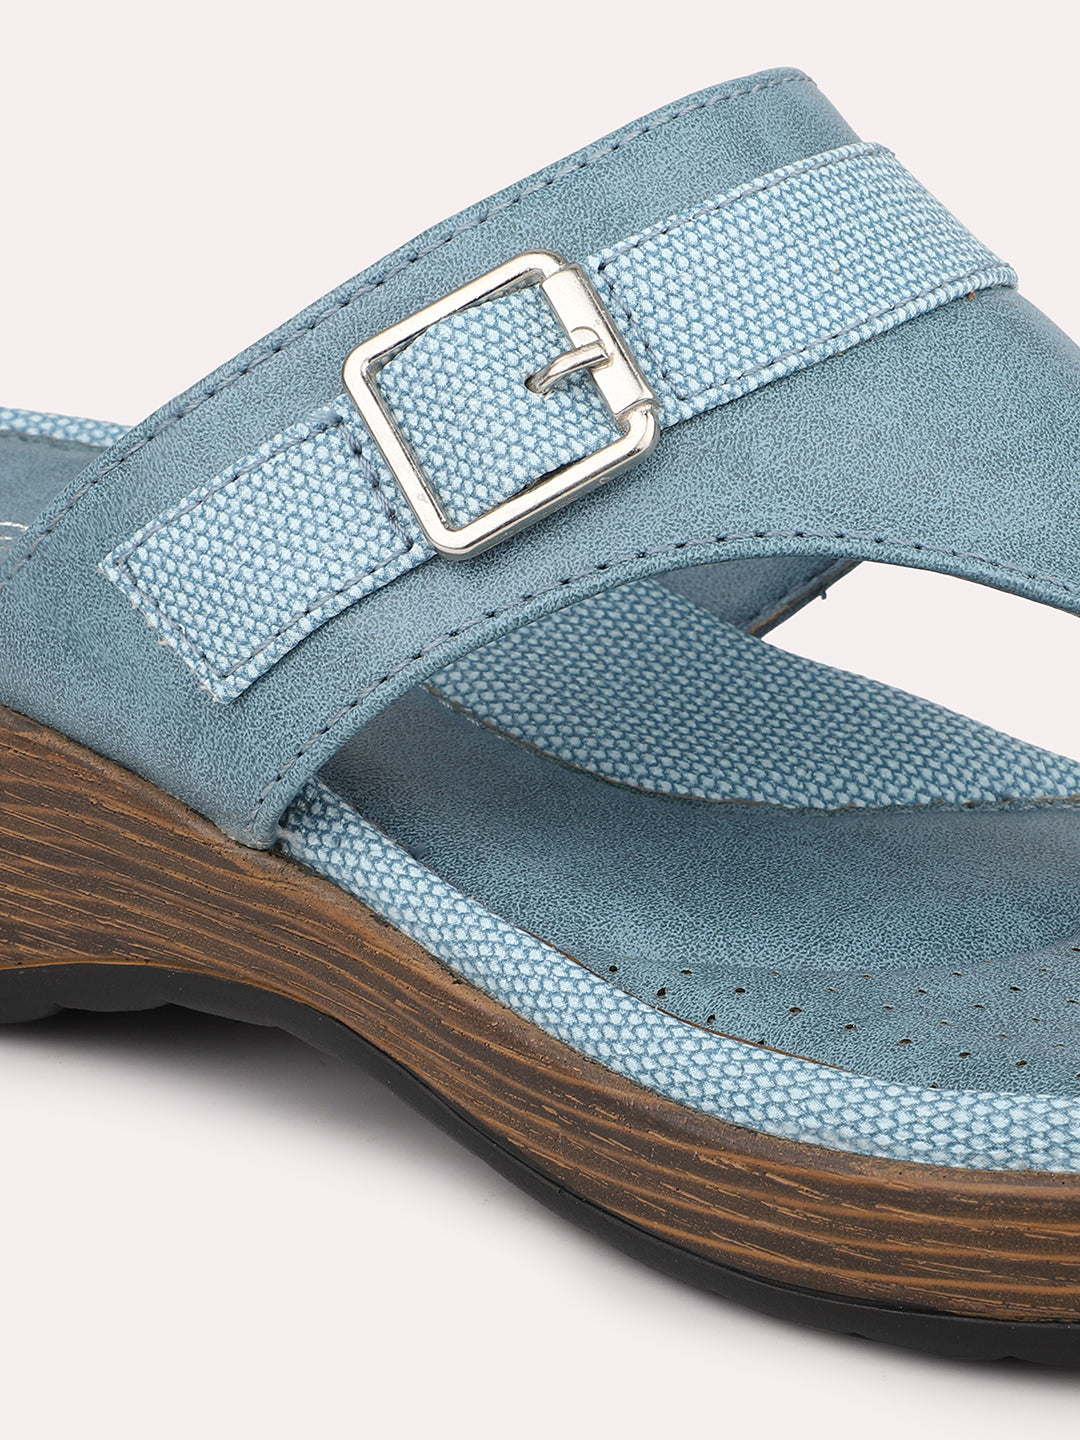 Women Blue-Toned Comfort Heels